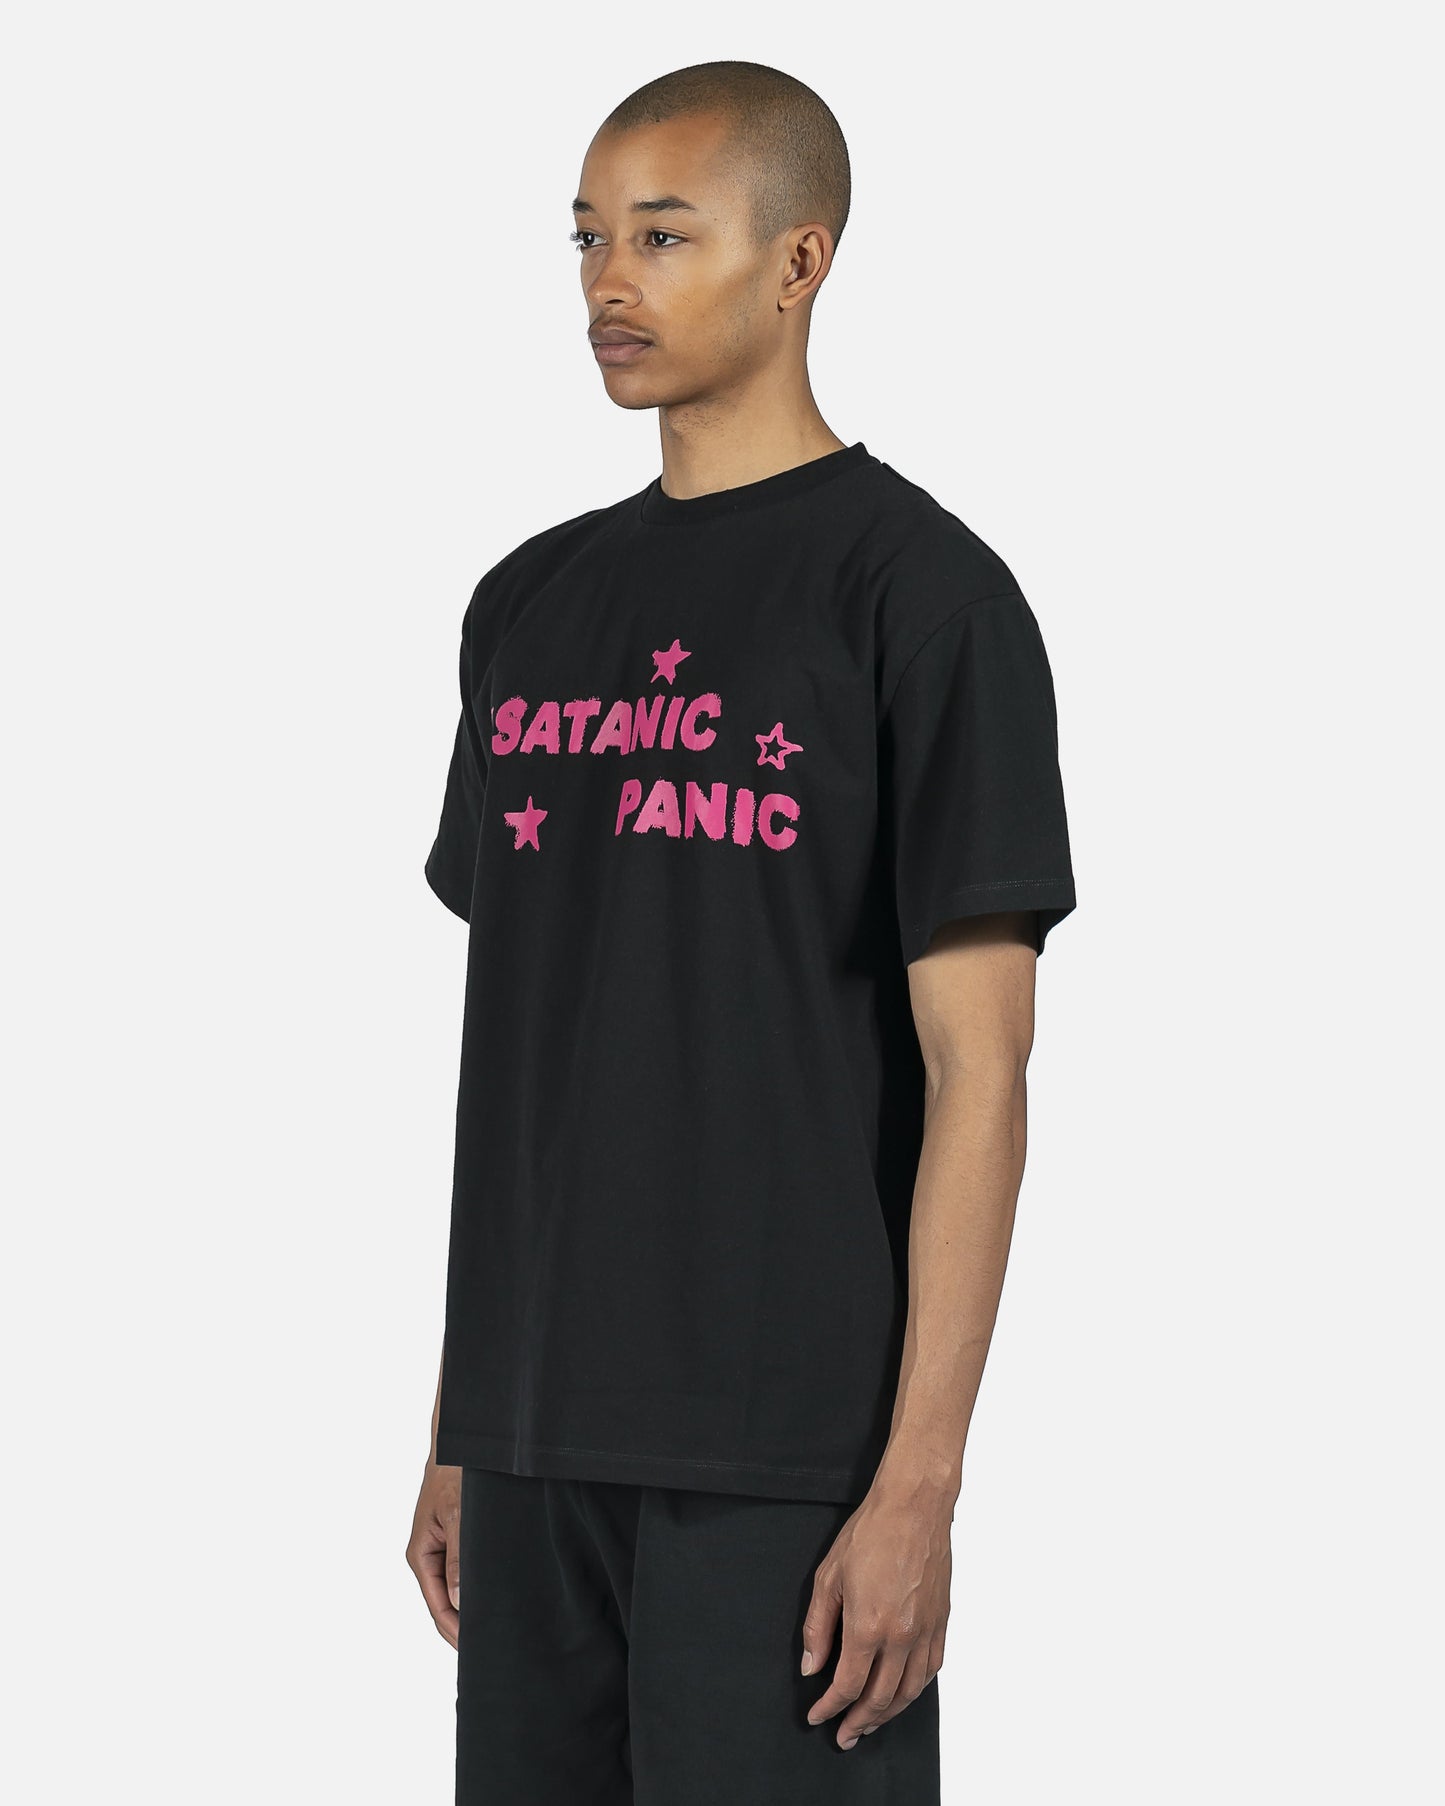 Aries Men's T-Shirts Satanic Panic Tee in Black